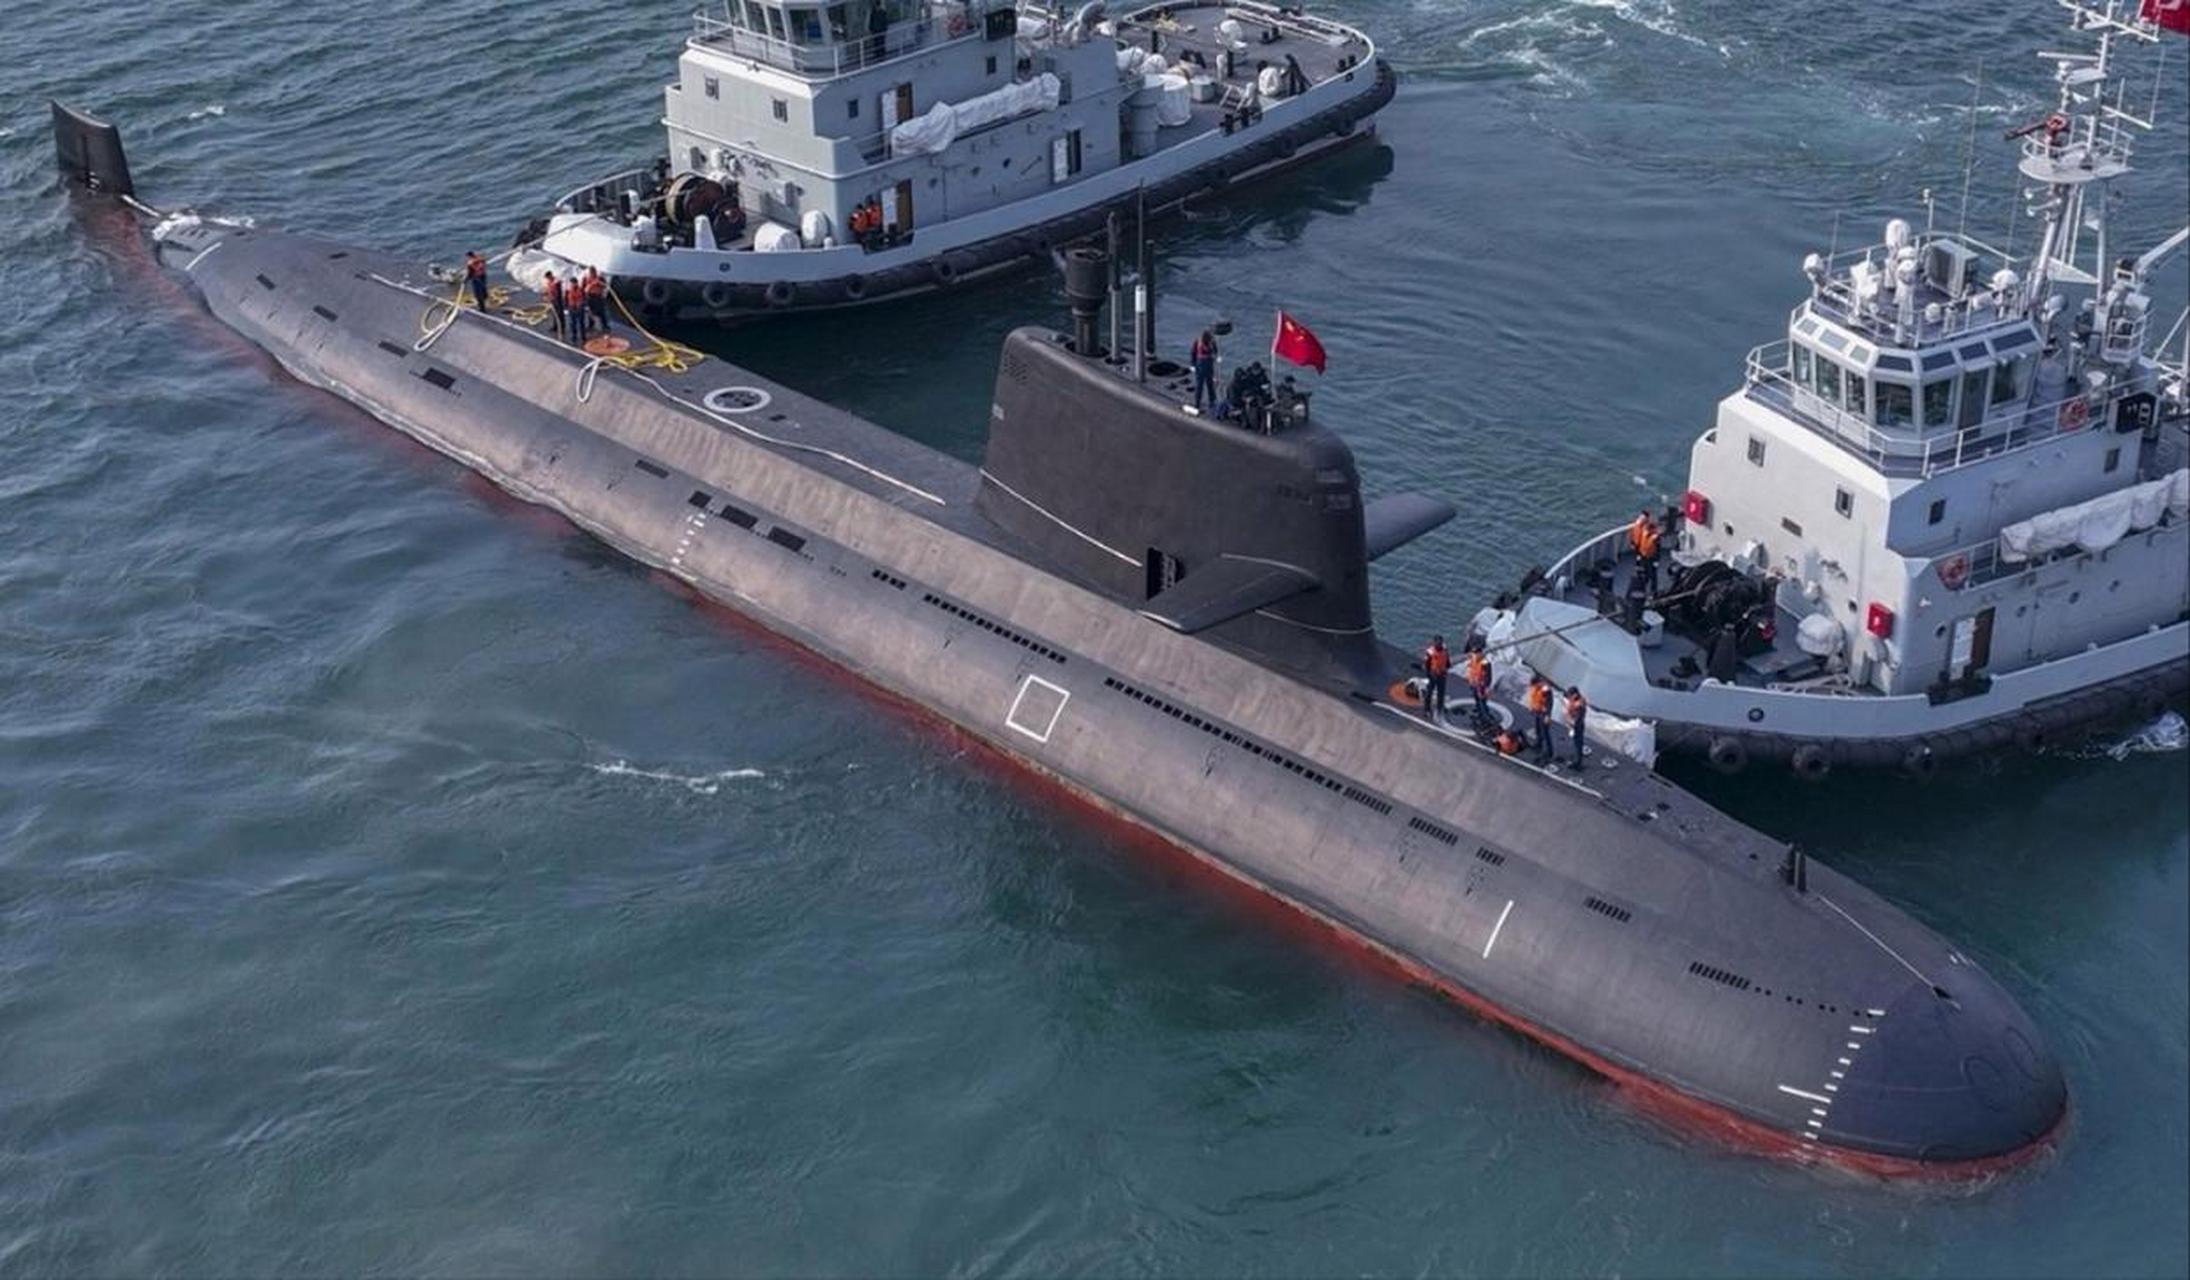 据悉,中国最新的039c常规动力潜艇已下水,该潜艇装备了垂直发射系统和